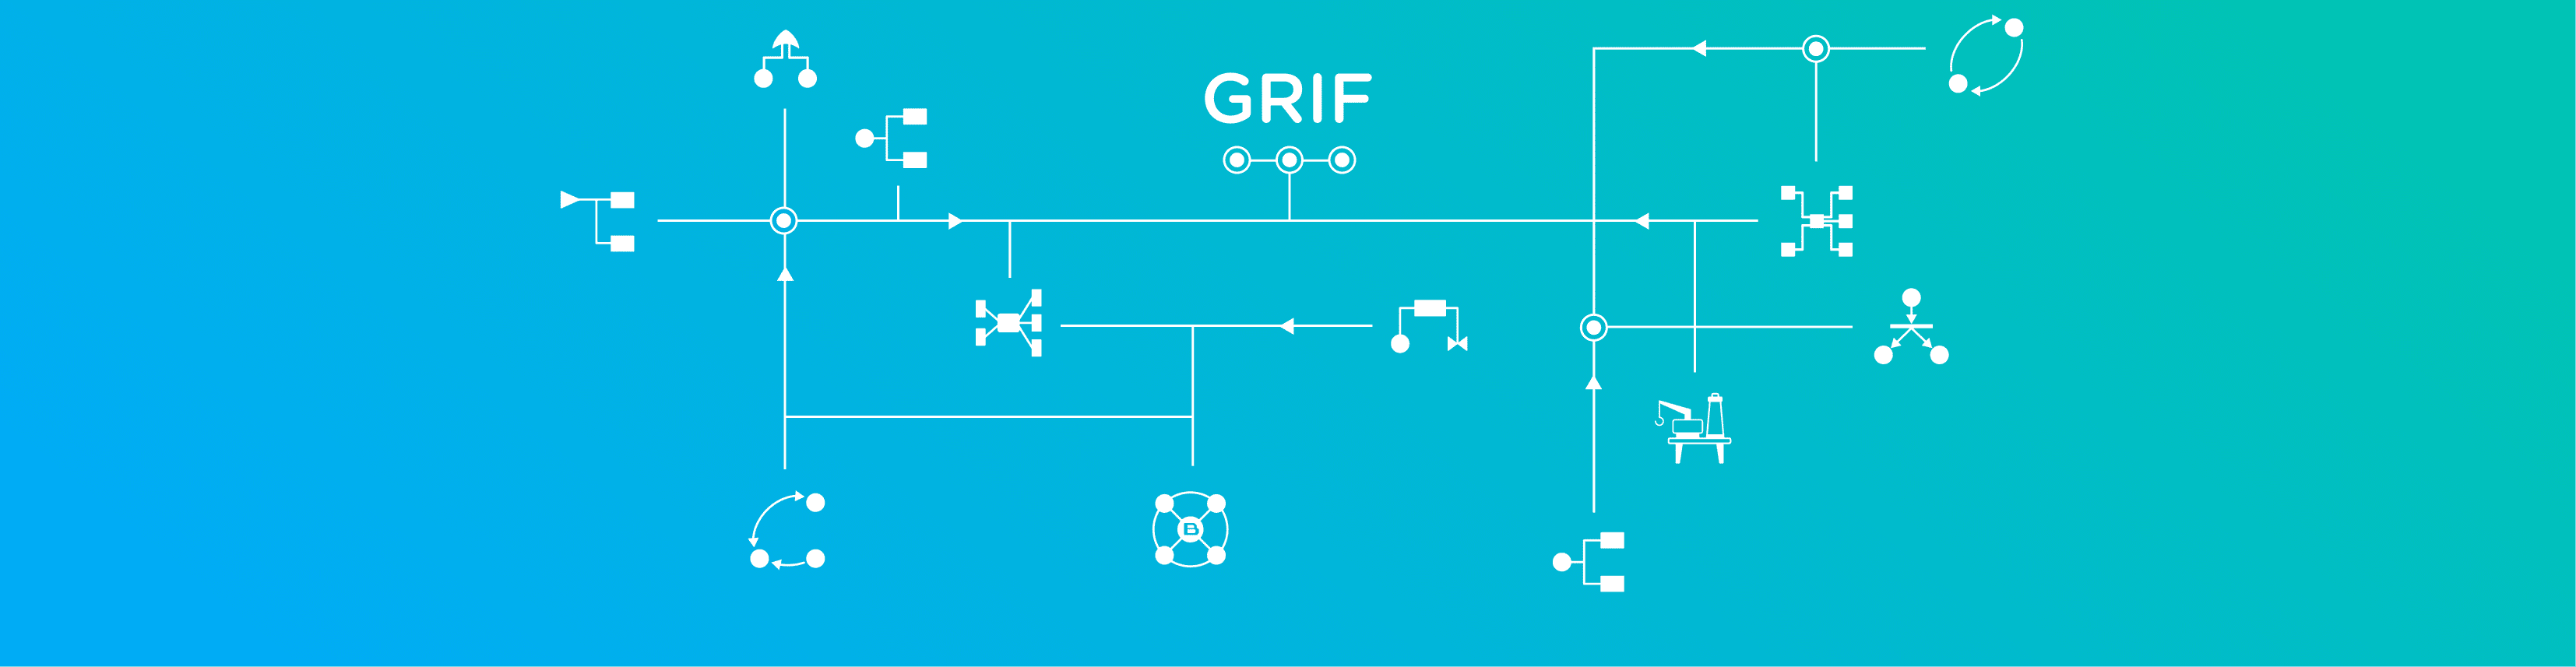 Suite logicielle GRIF 